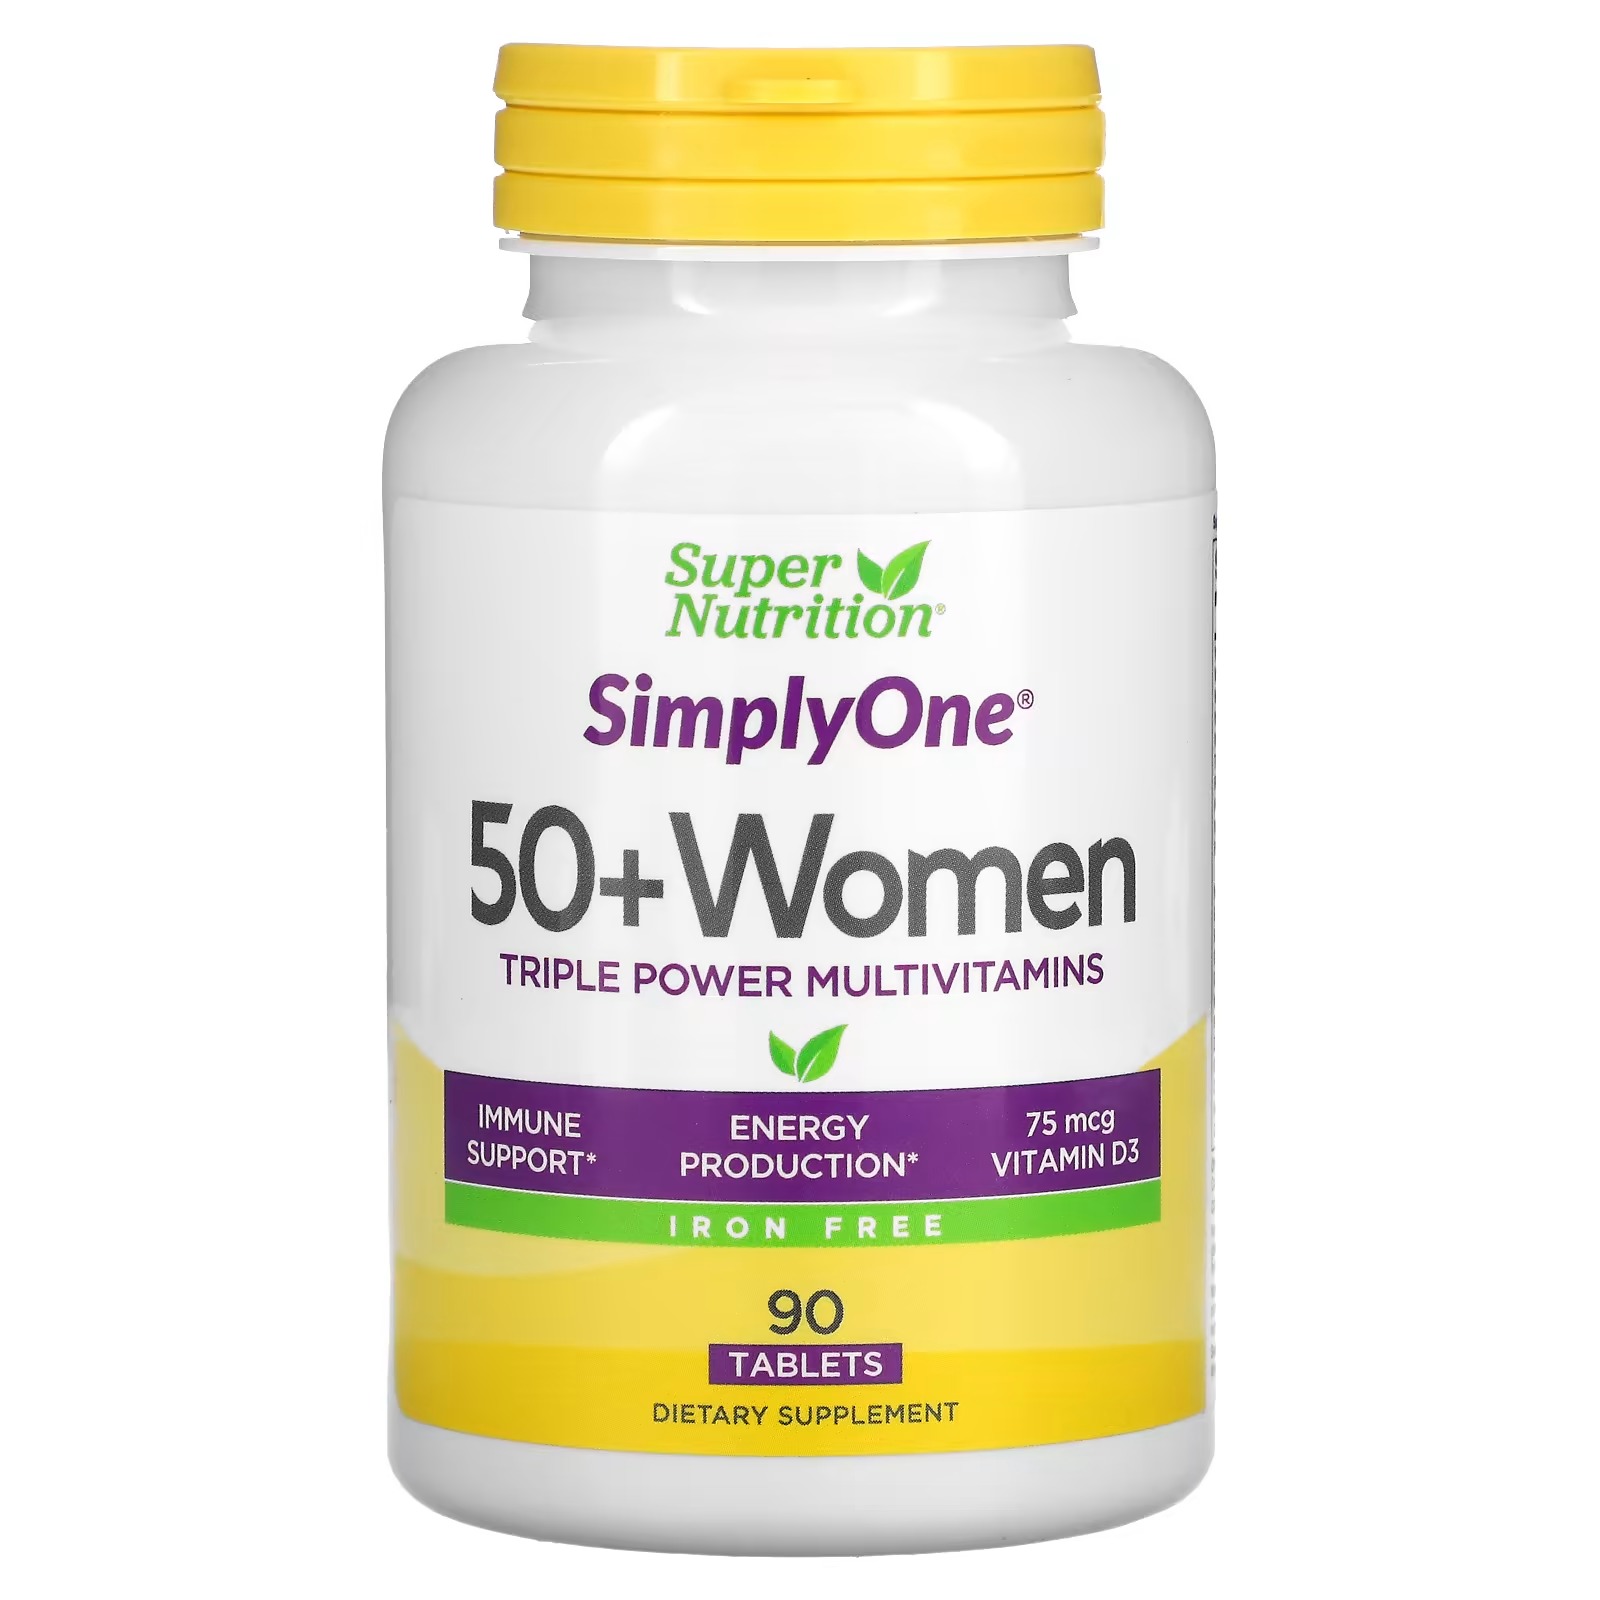 Мультивитамины Super Nutrition Triple Power для женщин старше 50 лет, 90 таблеток centrum для женщин старше 50 лет мини мультивитамины 160 таблеток